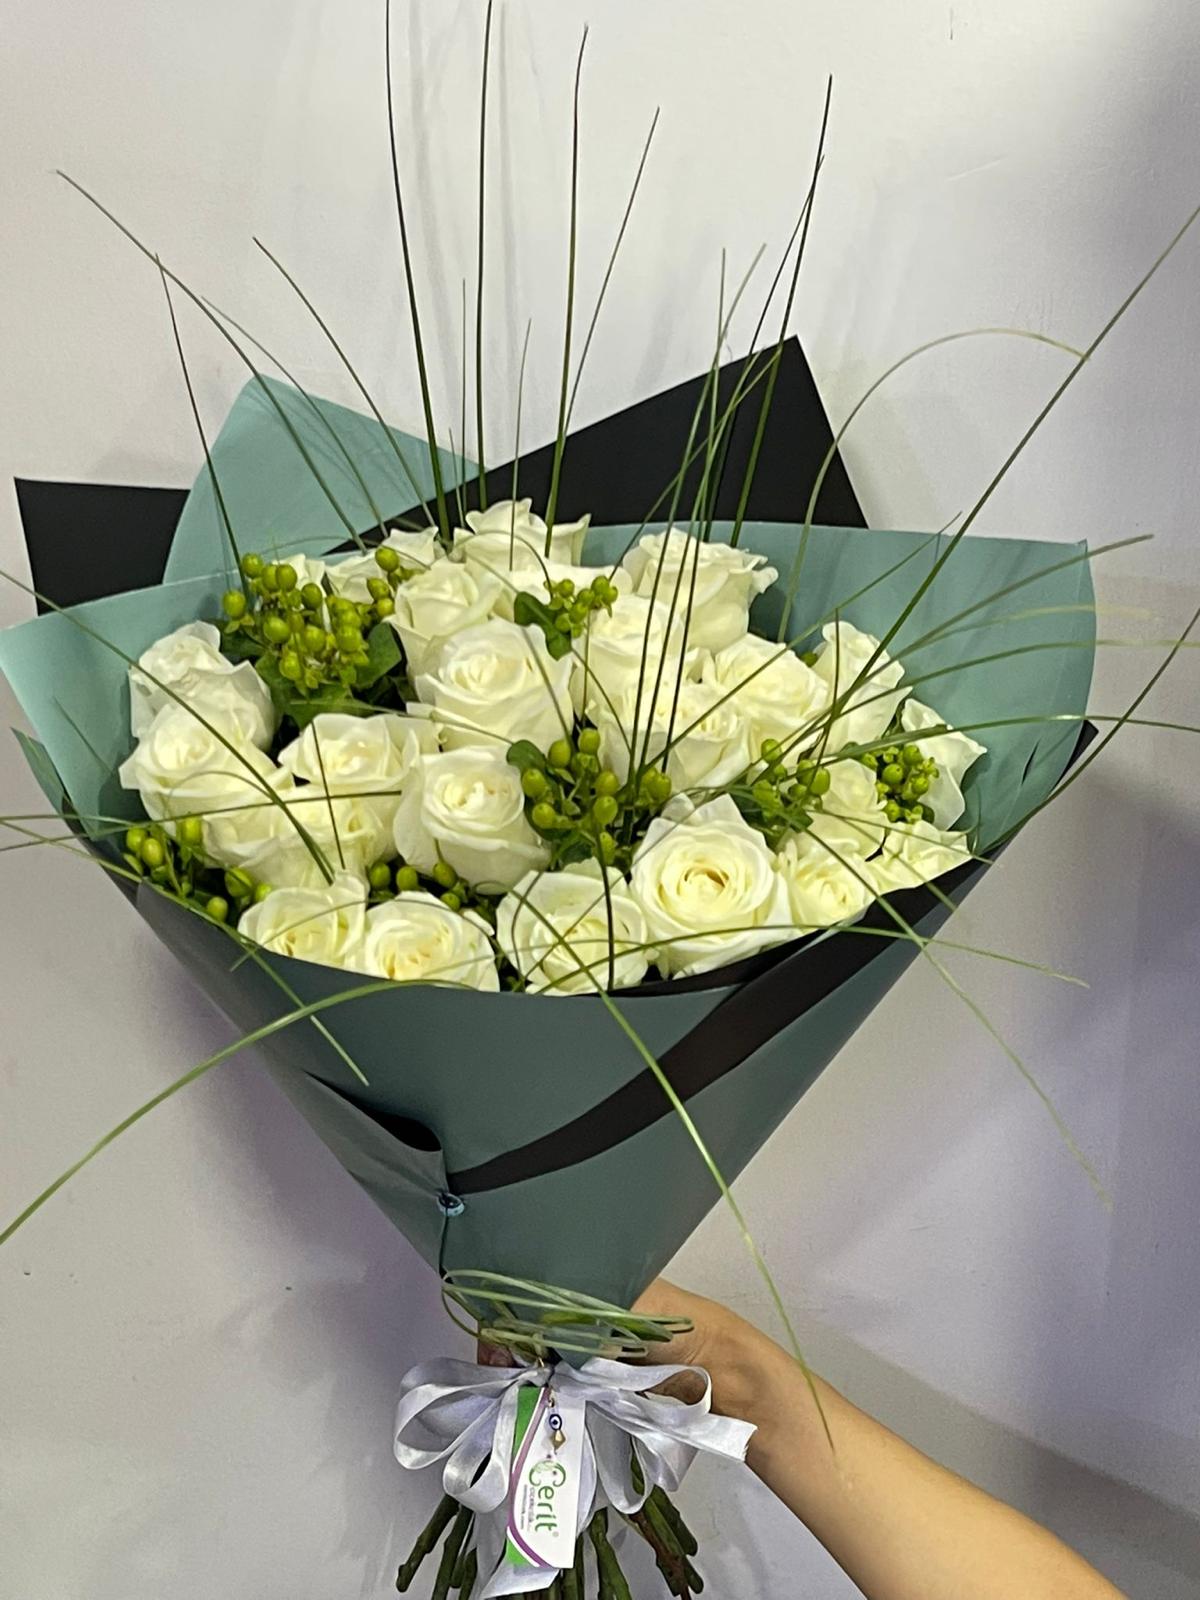  Belek Florist White Rose Bouquet 25 Pieces 